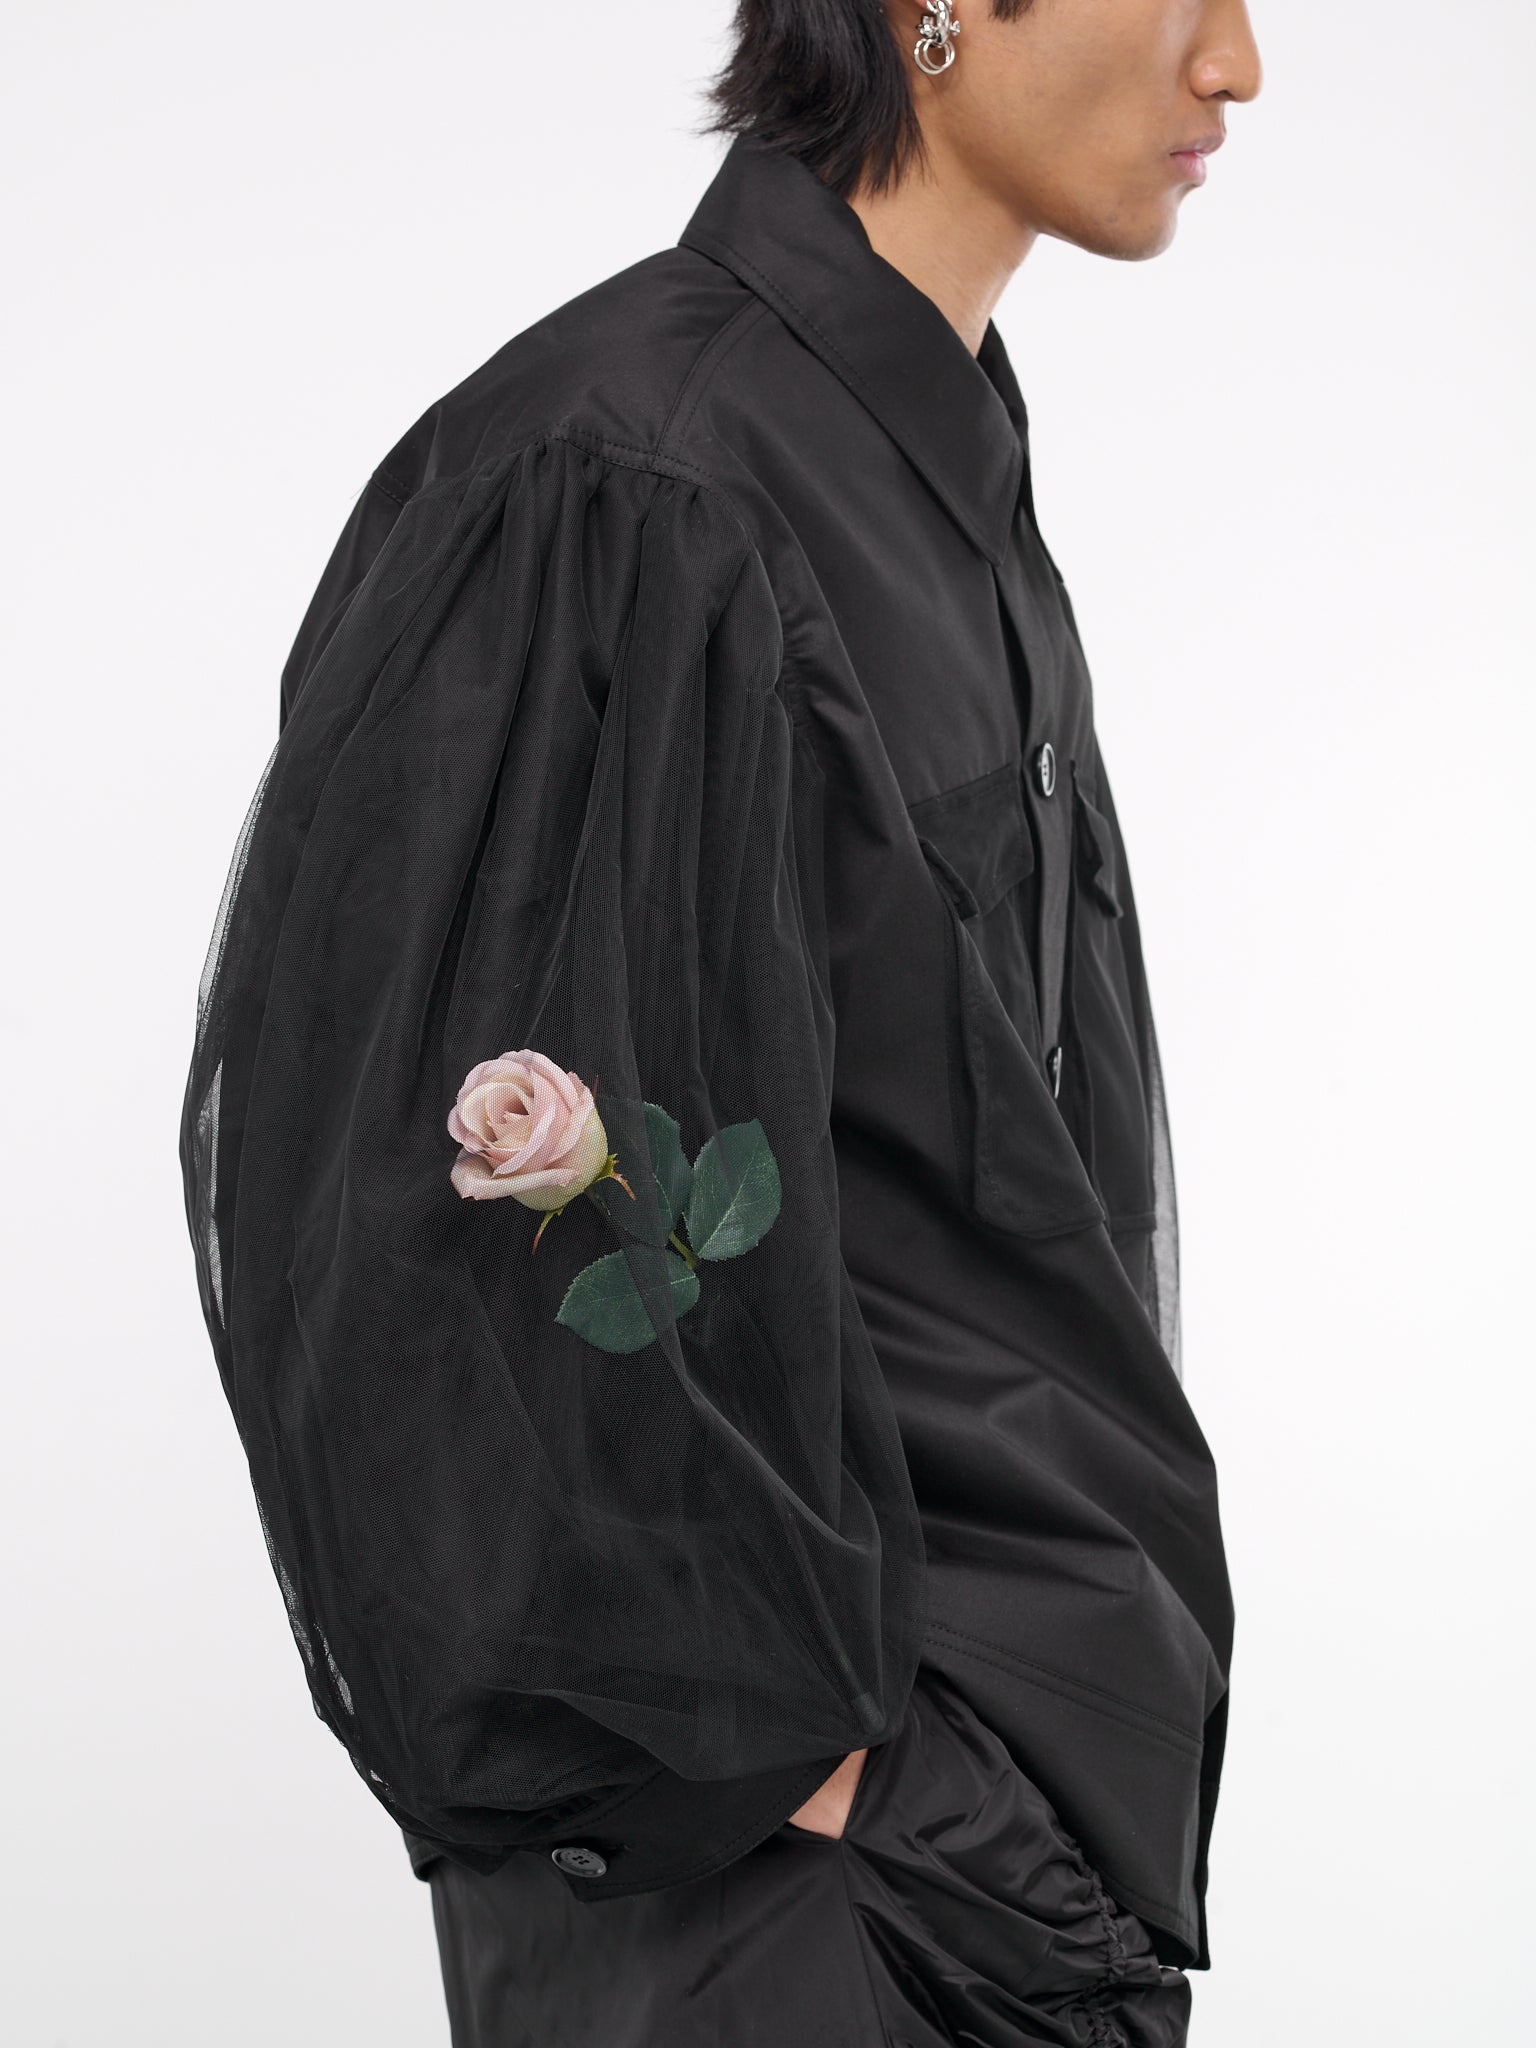 Flower Tulle Overlay Jacket (6089F-1041-BLACK)